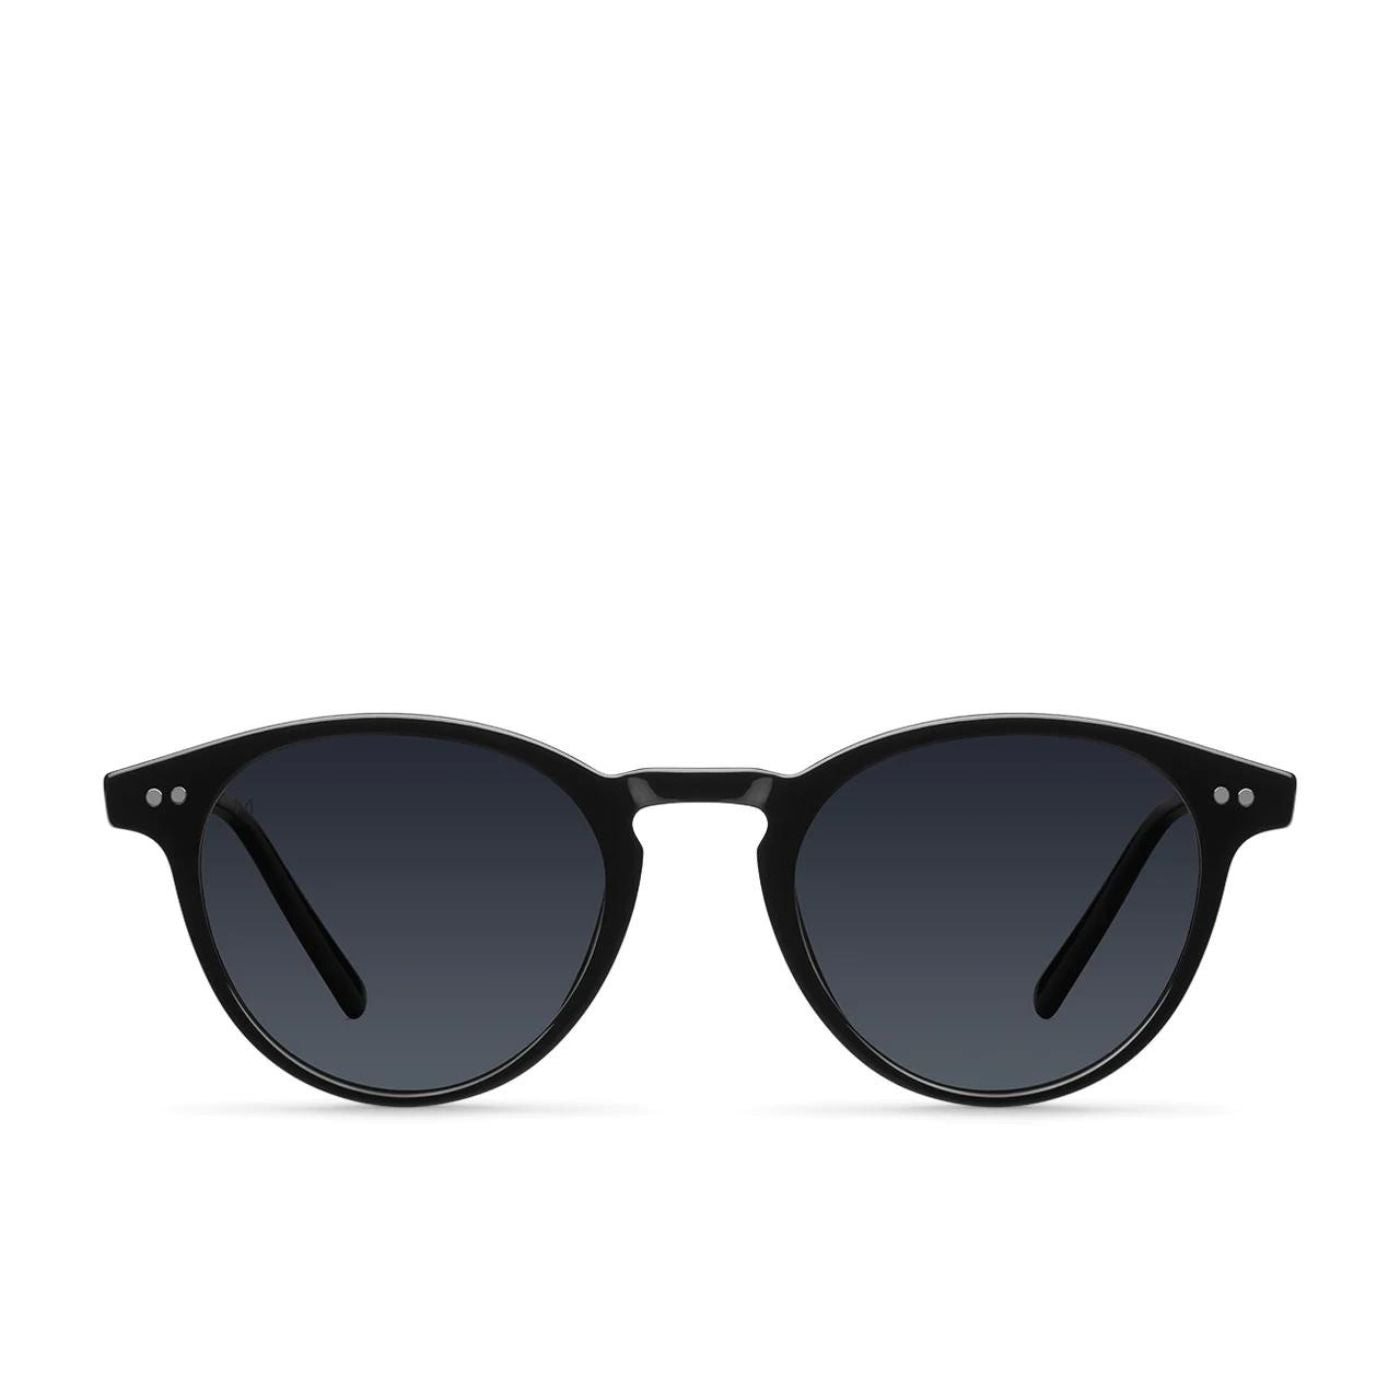 Sika All Black Meller sunglasses